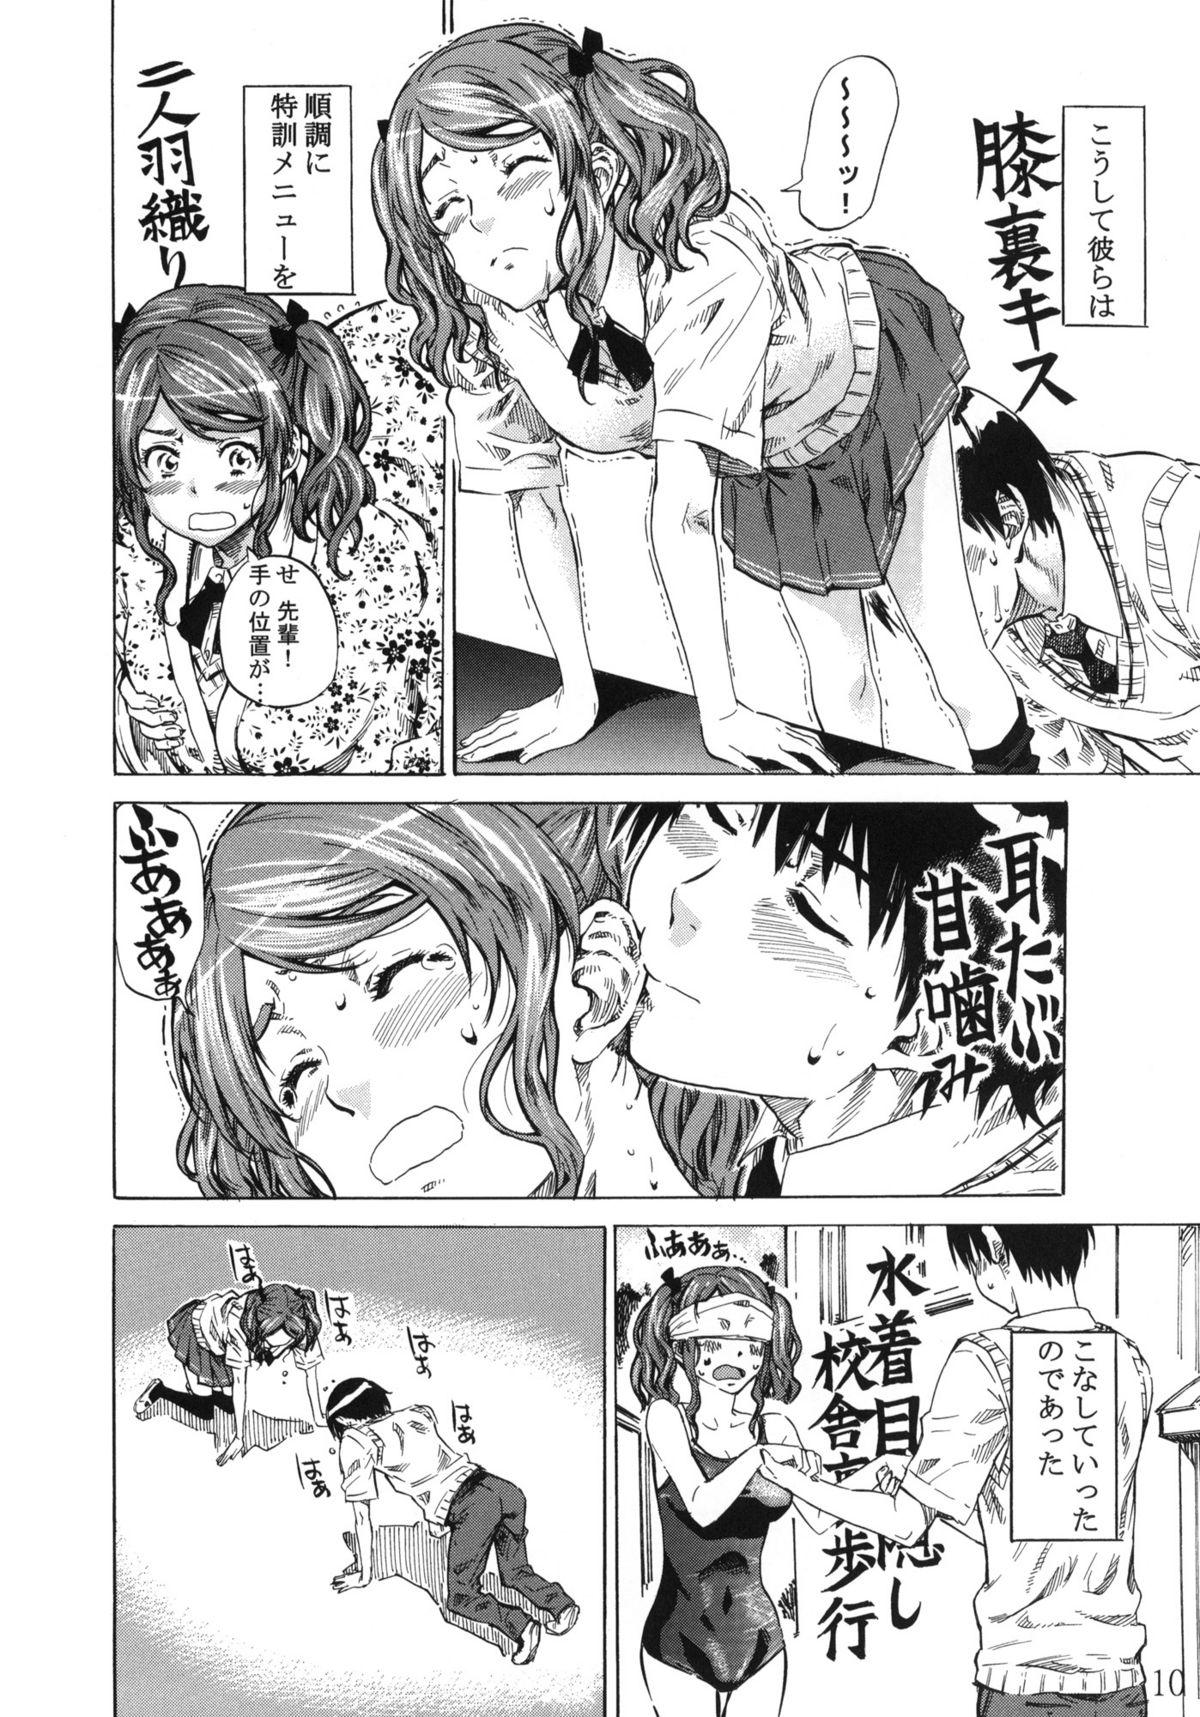 Bra Nakata-san ga Fukafuka sugite Ikiru no ga Tsurai orz - Amagami Cougar - Page 9